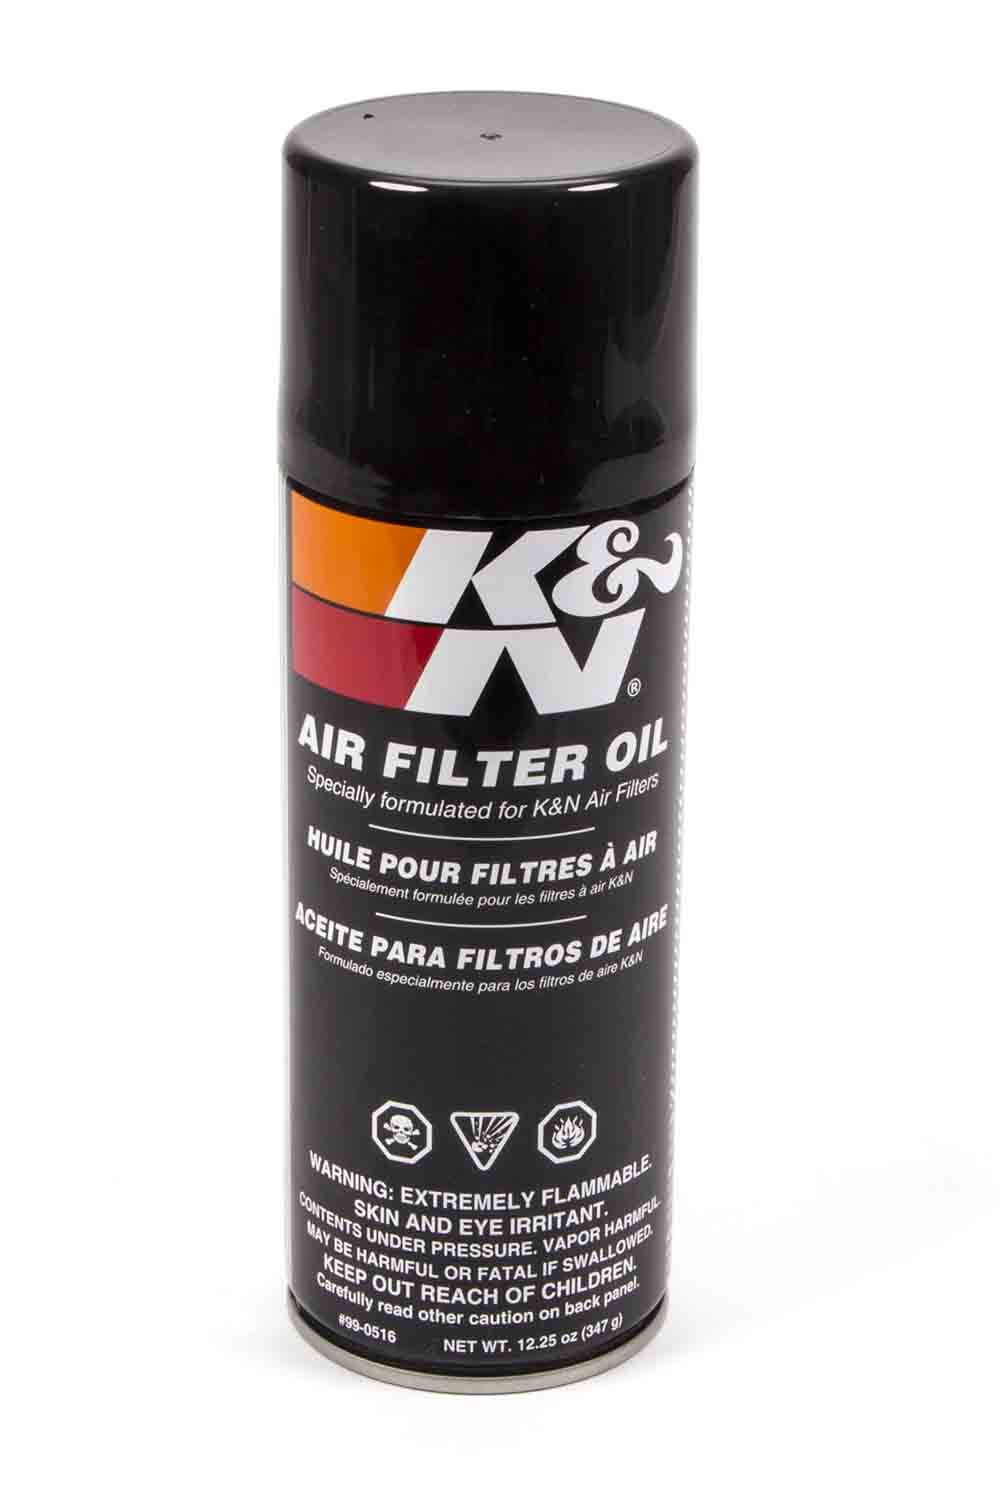 K & N Air Filter Oil, Red, 12.25 oz Aerosol, Each